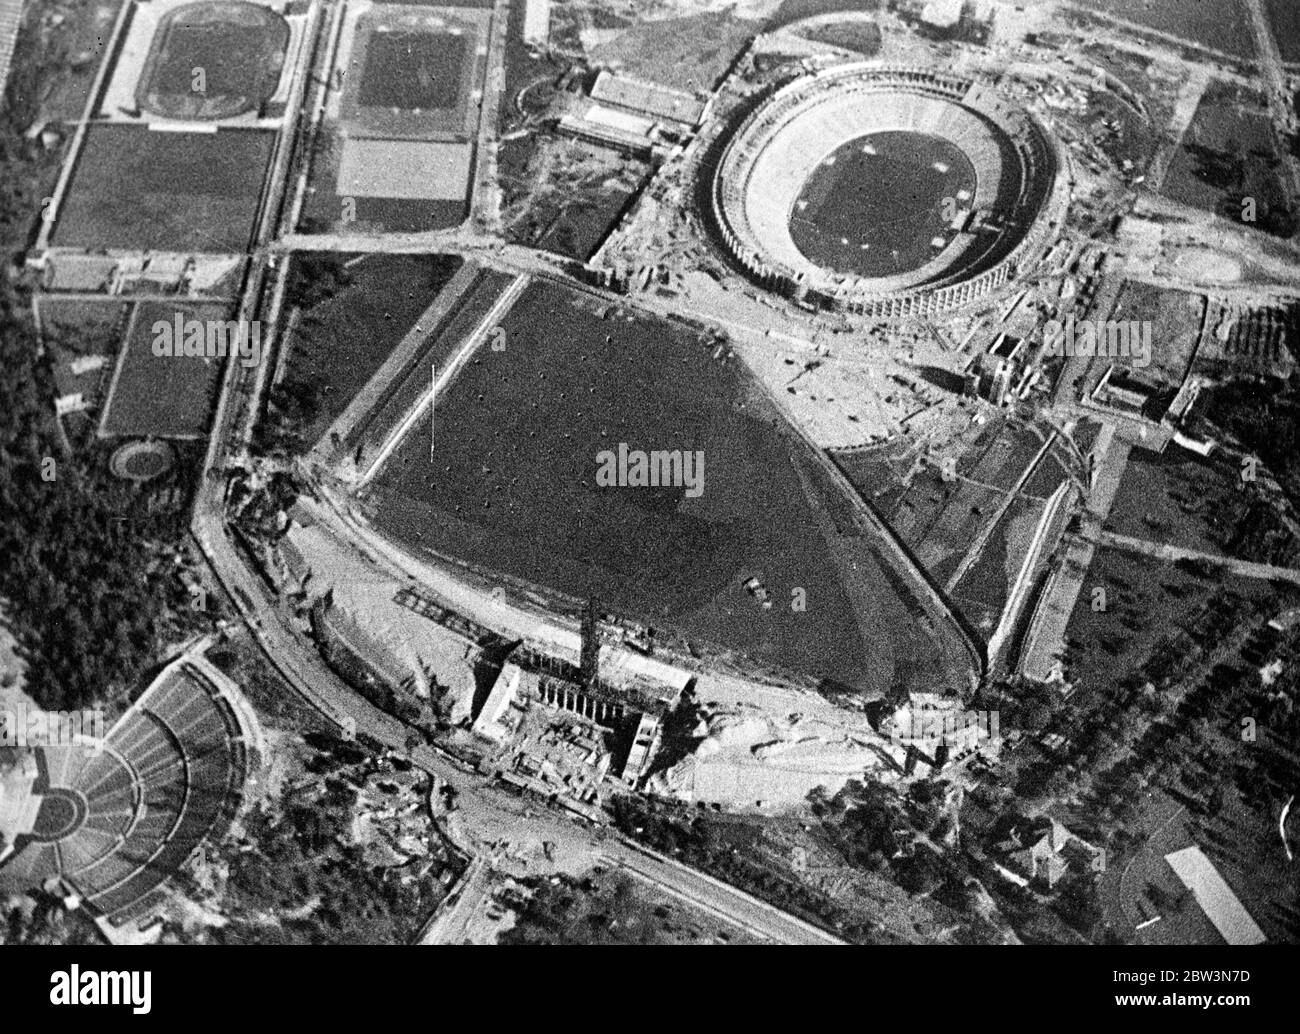 Lo stadio olimpico tedesco dall' alto. Una vista aerea del grande centro dei Giochi Olimpici vicino a Berlino, mentre si avvicina il completamento . Nella parte superiore della foto si può vedere il principale stadio con la piscina a sinistra. In primo piano è il campo di polo con la torre dell'orologio olimpico all'ingresso. 19 marzo 1936 Foto Stock